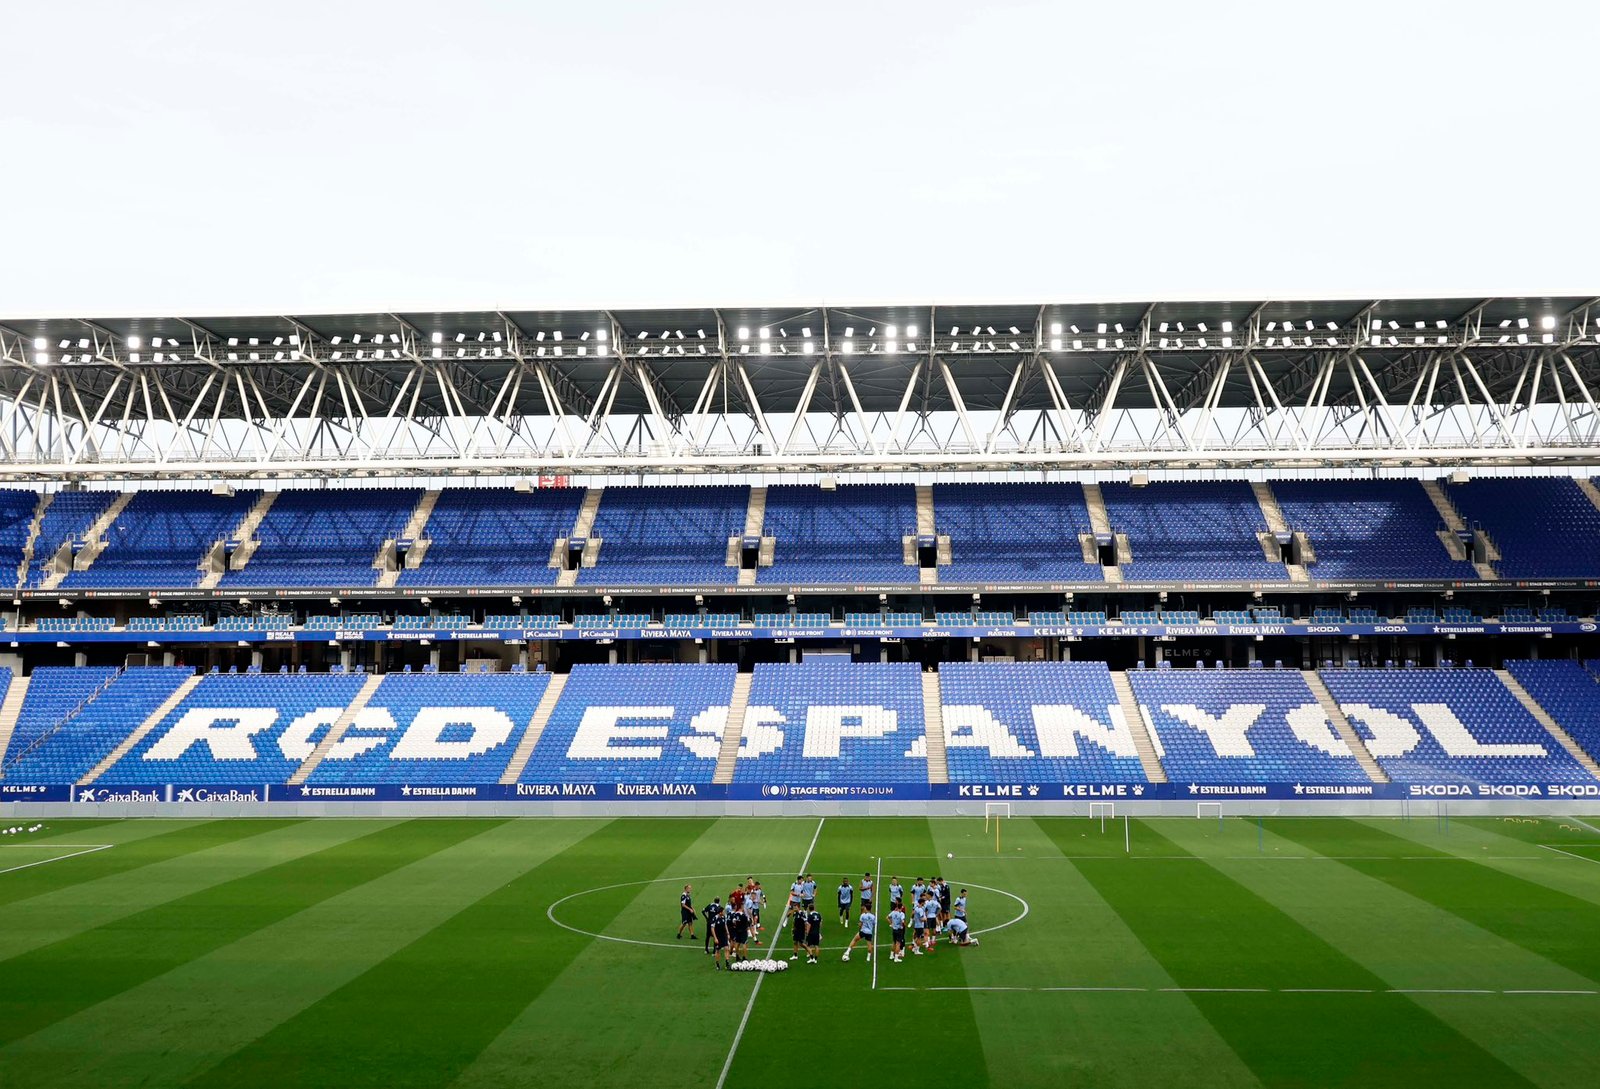 RCD Espanyol - CD Eldense: Duelo sin precedentes en el Stage Front Stadium  - AFICIÓN DEPORTIVA